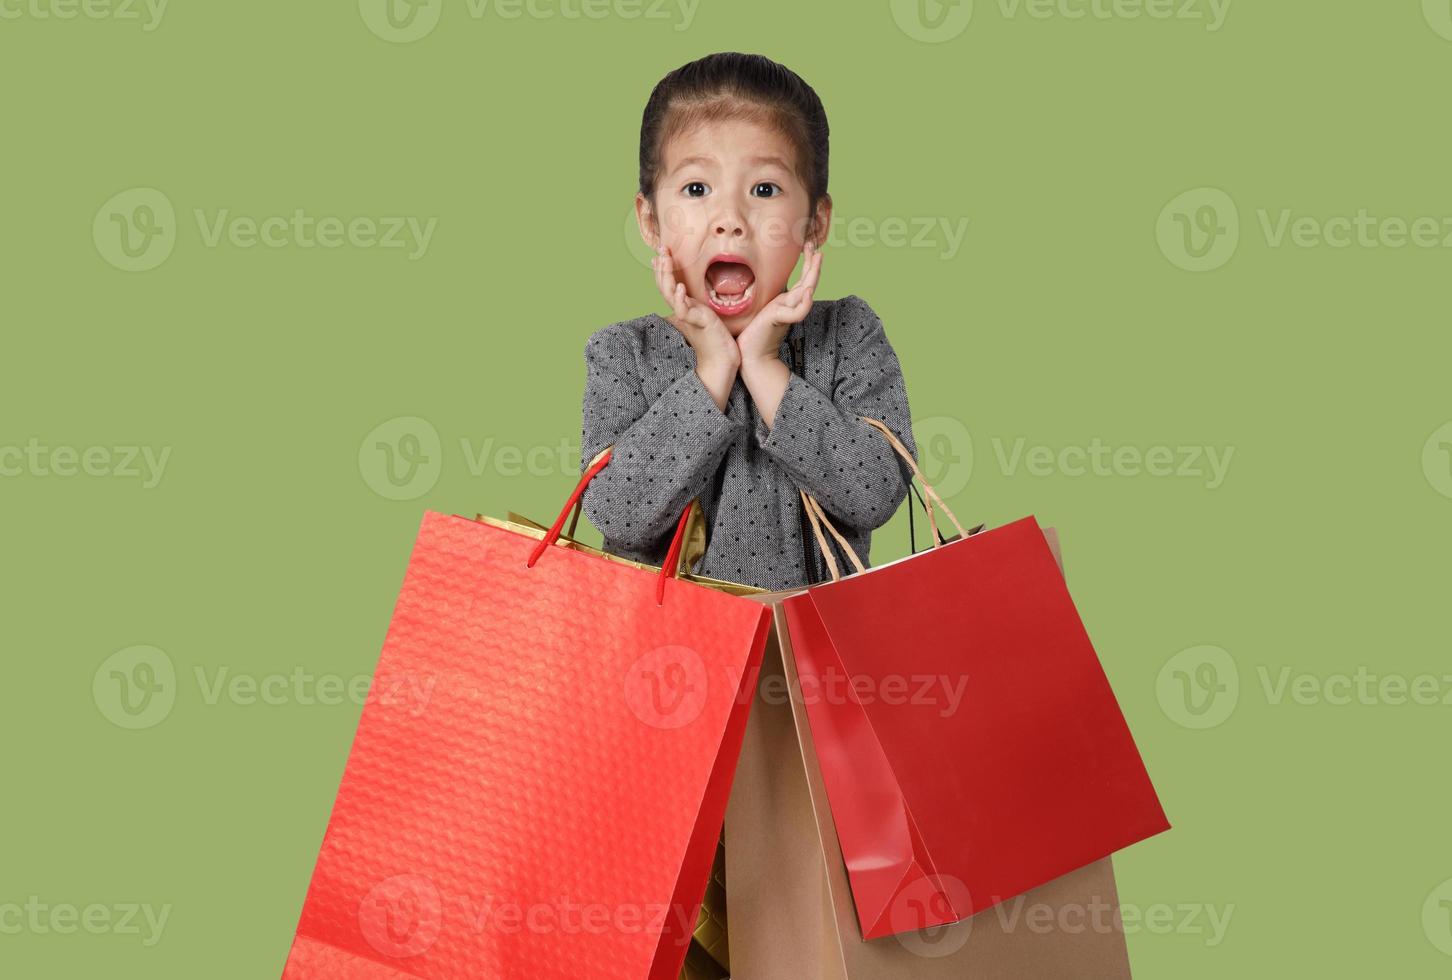 Shopping junge asiatische Mädchen mit Einkaufstaschen im grünen Hintergrund, kopieren Sie Platz für Ihren Text, E-Commerce-Digital-Marketing-Lifestyle-Konzept foto